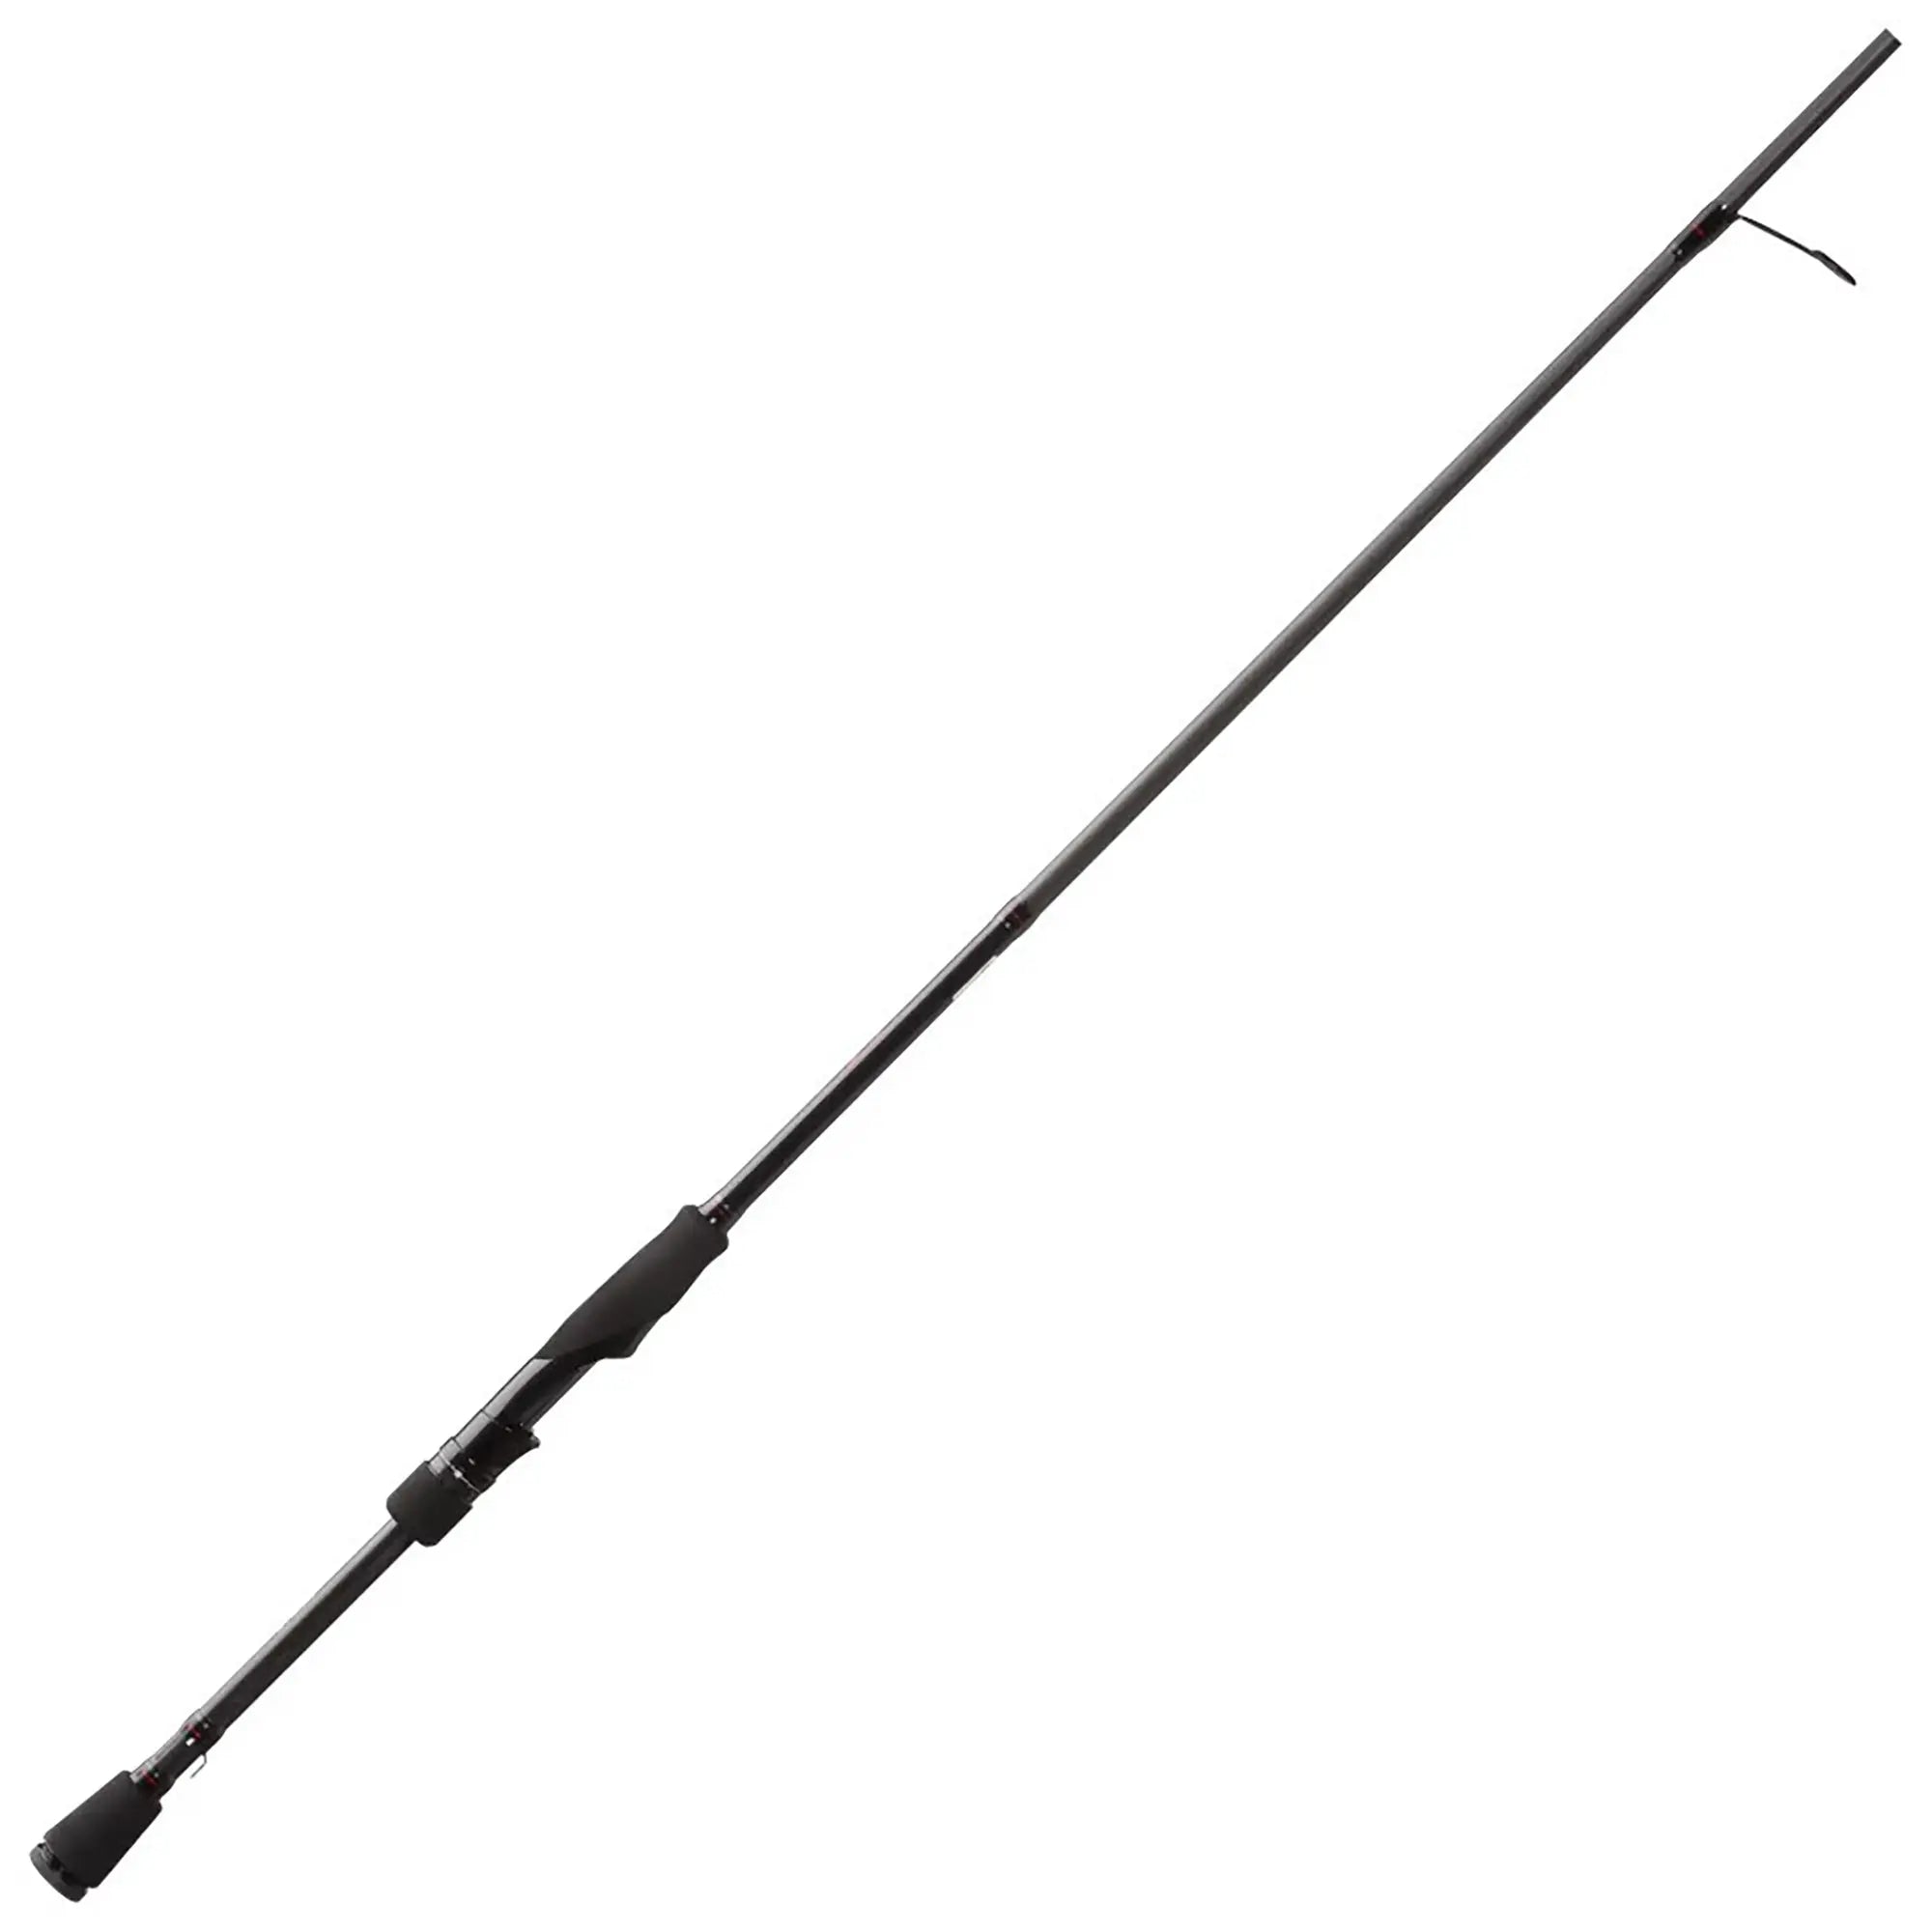 13 Fishing Meta Casting Fishing Rod - 7'7" (Heavy) 13 Fishing